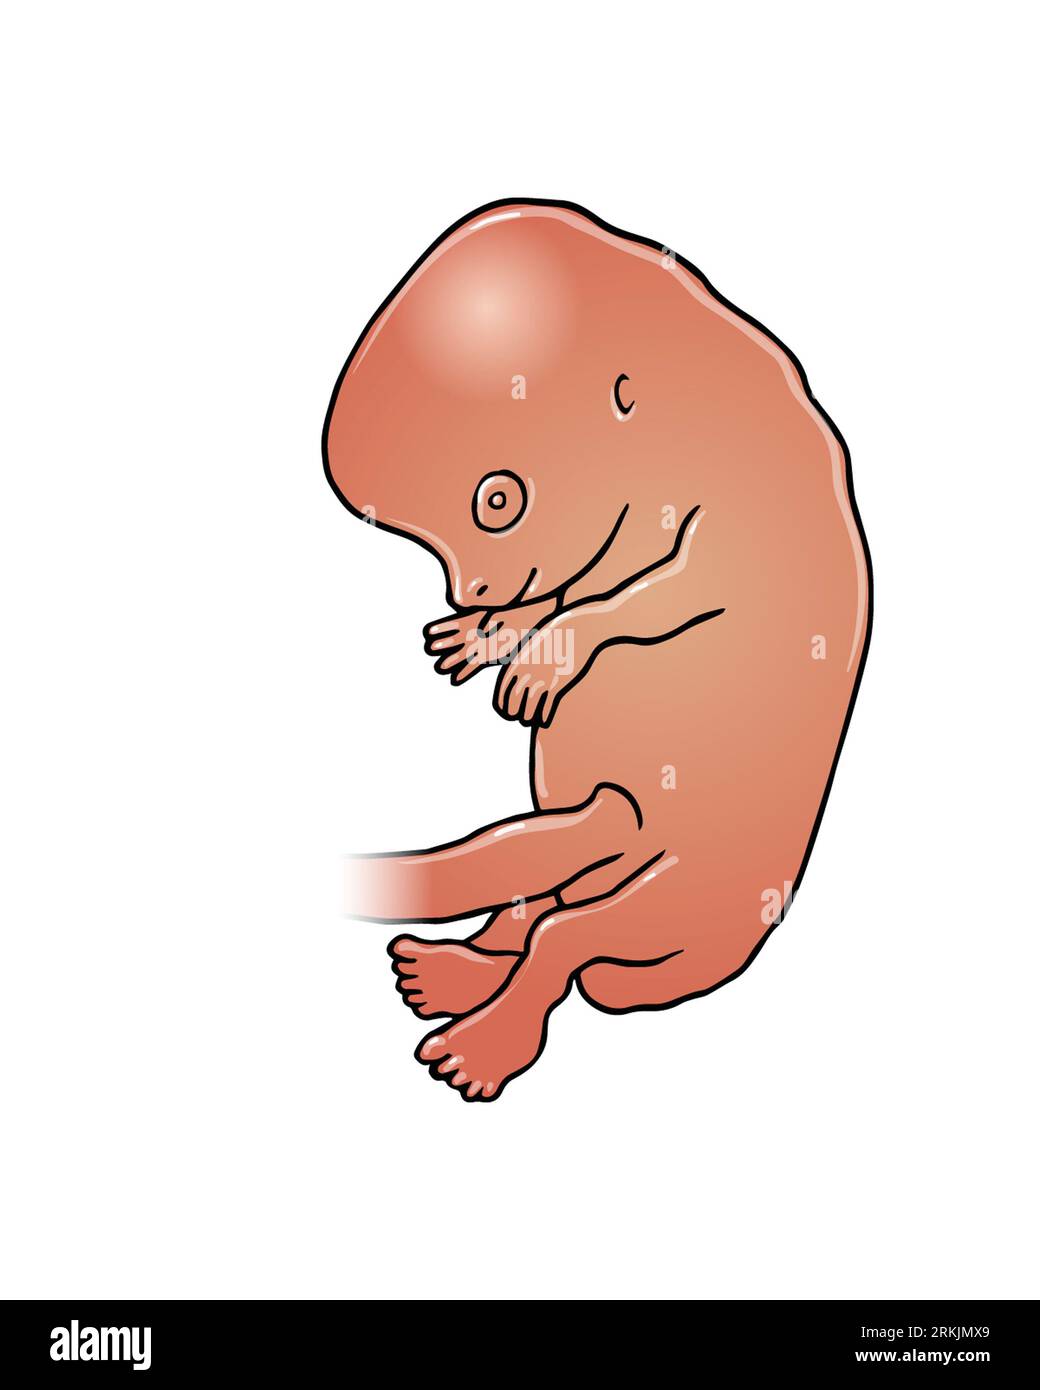 Medizinische Illustration eines dunkelhäutigen Fötus nach etwa zwei Monaten, 8 Wochen, während des ersten Trimenons einer Schwangerschaft, fetale Entwicklung. Stockfoto